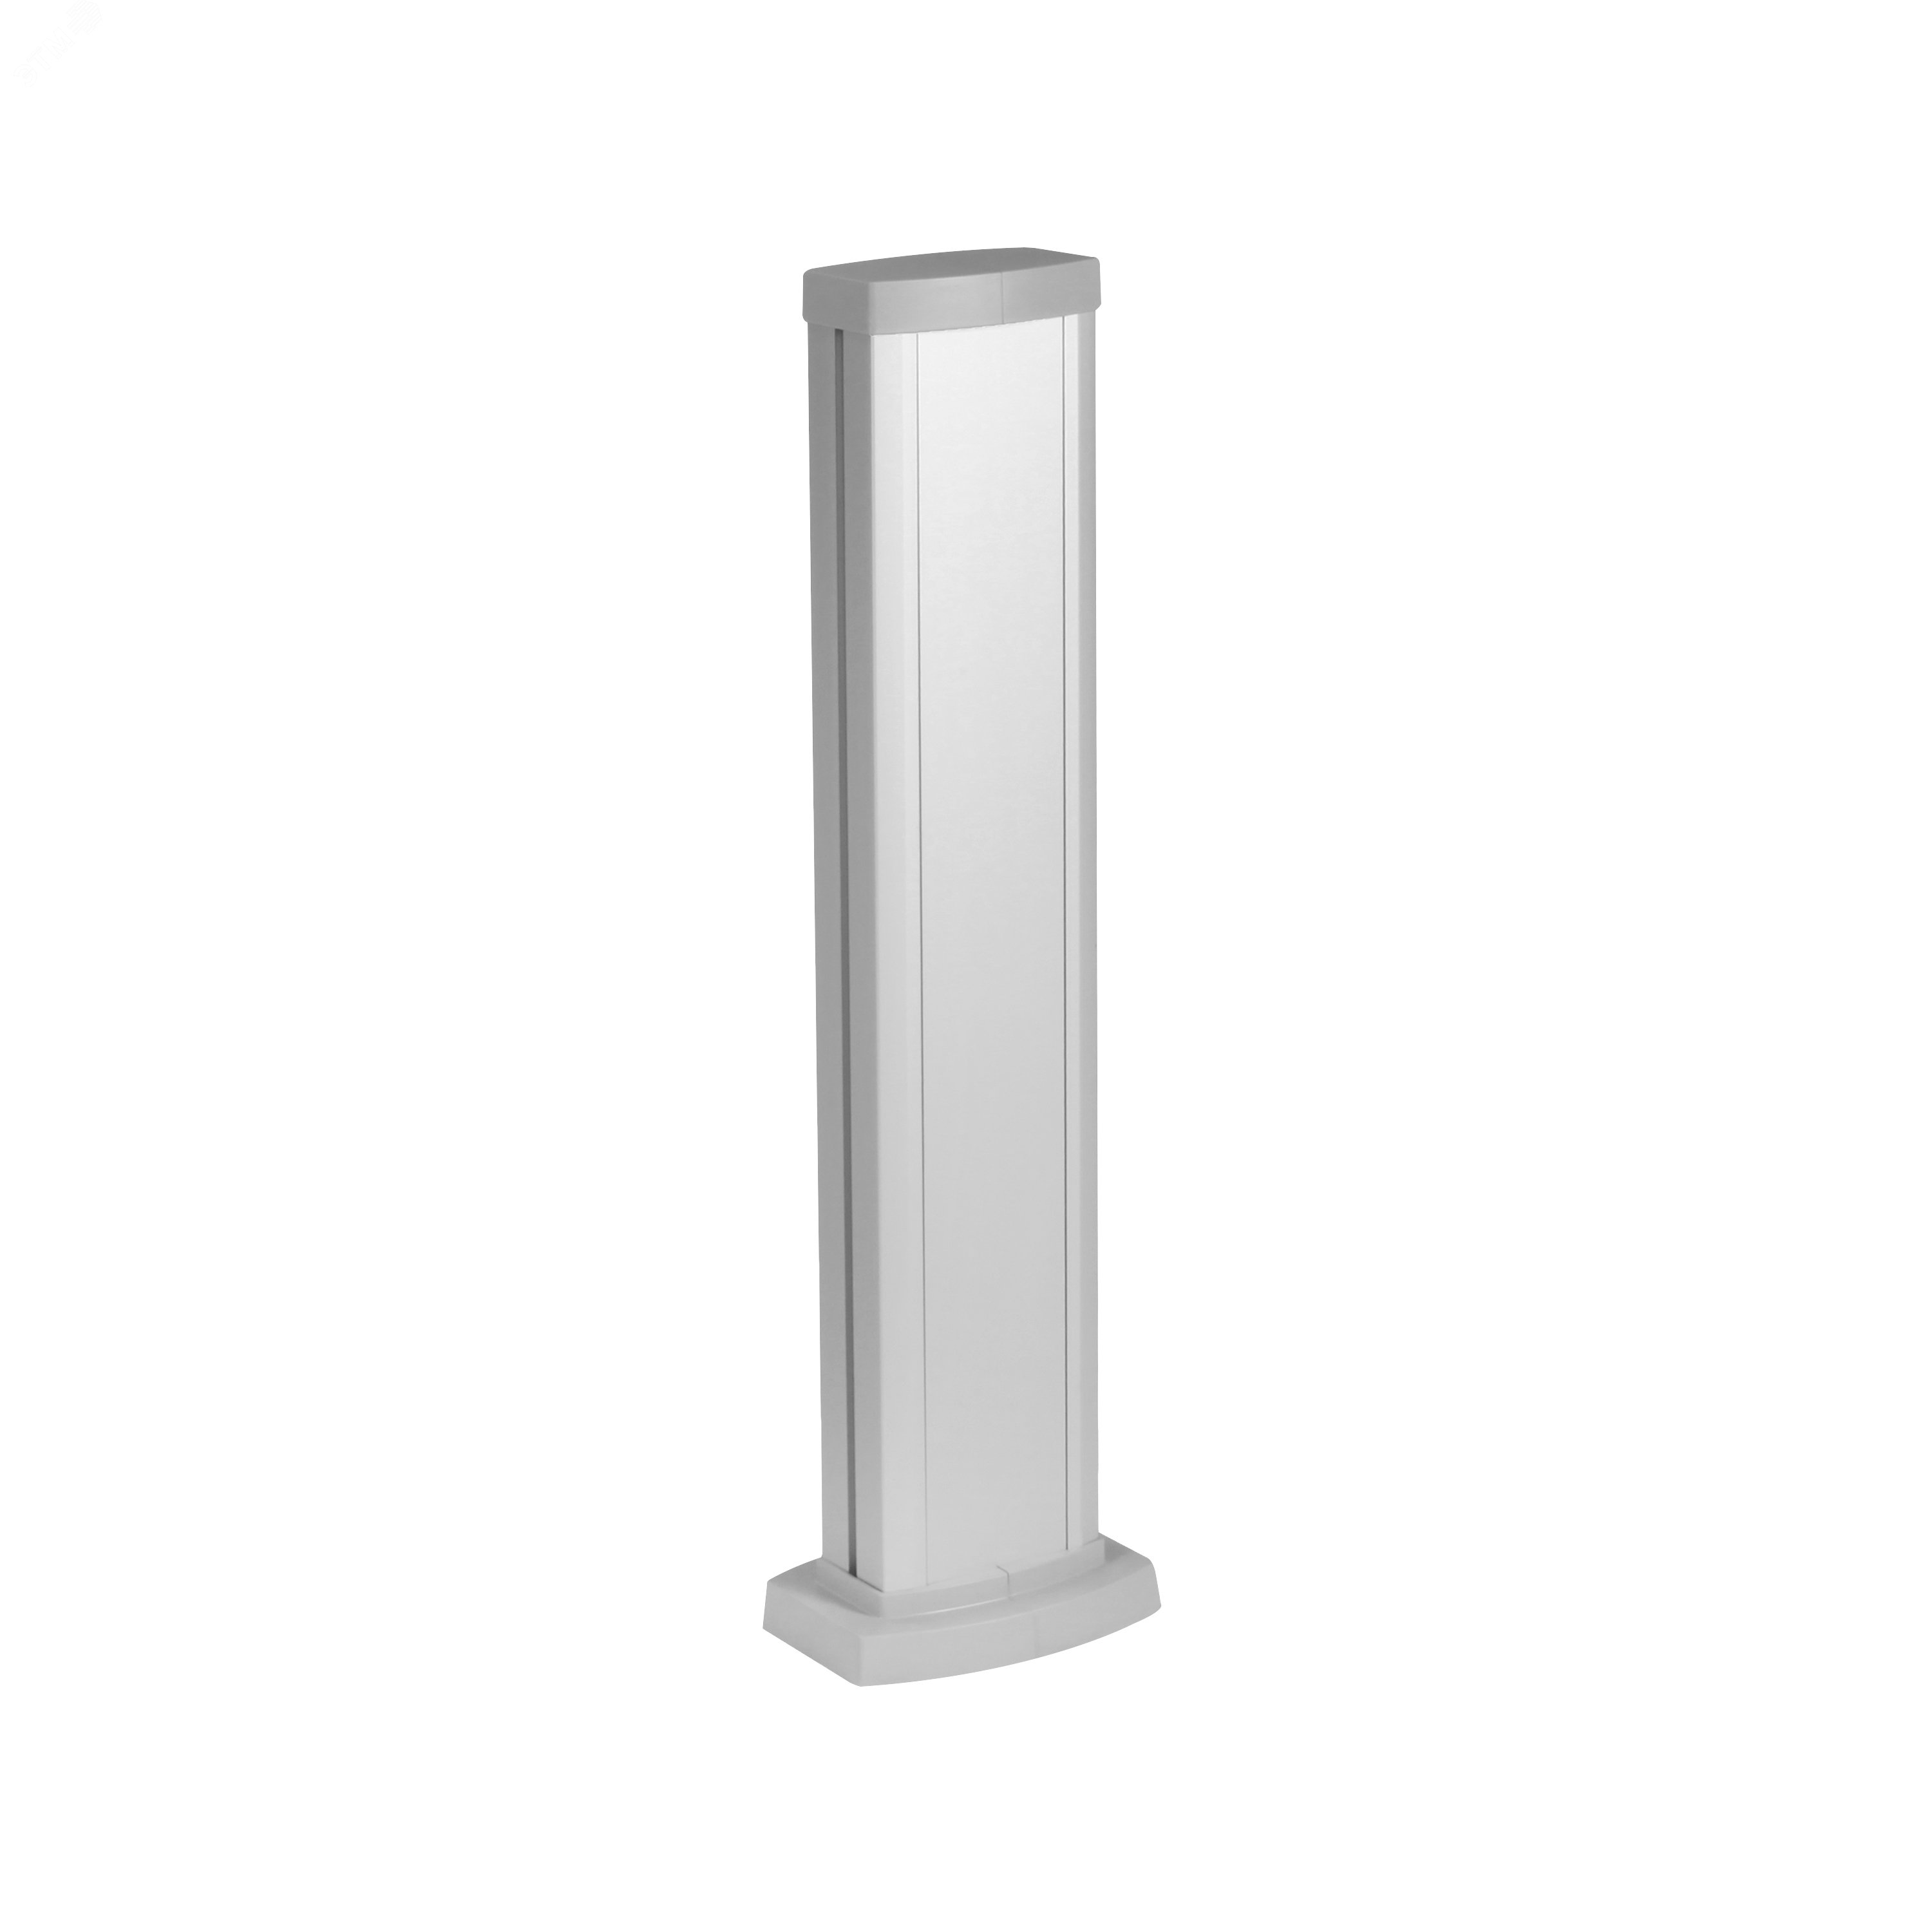 Универсальная мини-колонна алюминиевая с крышкой из алюминия 1 секция, высота 0,68 метра, цвет алюминий 653104 Legrand - превью 2